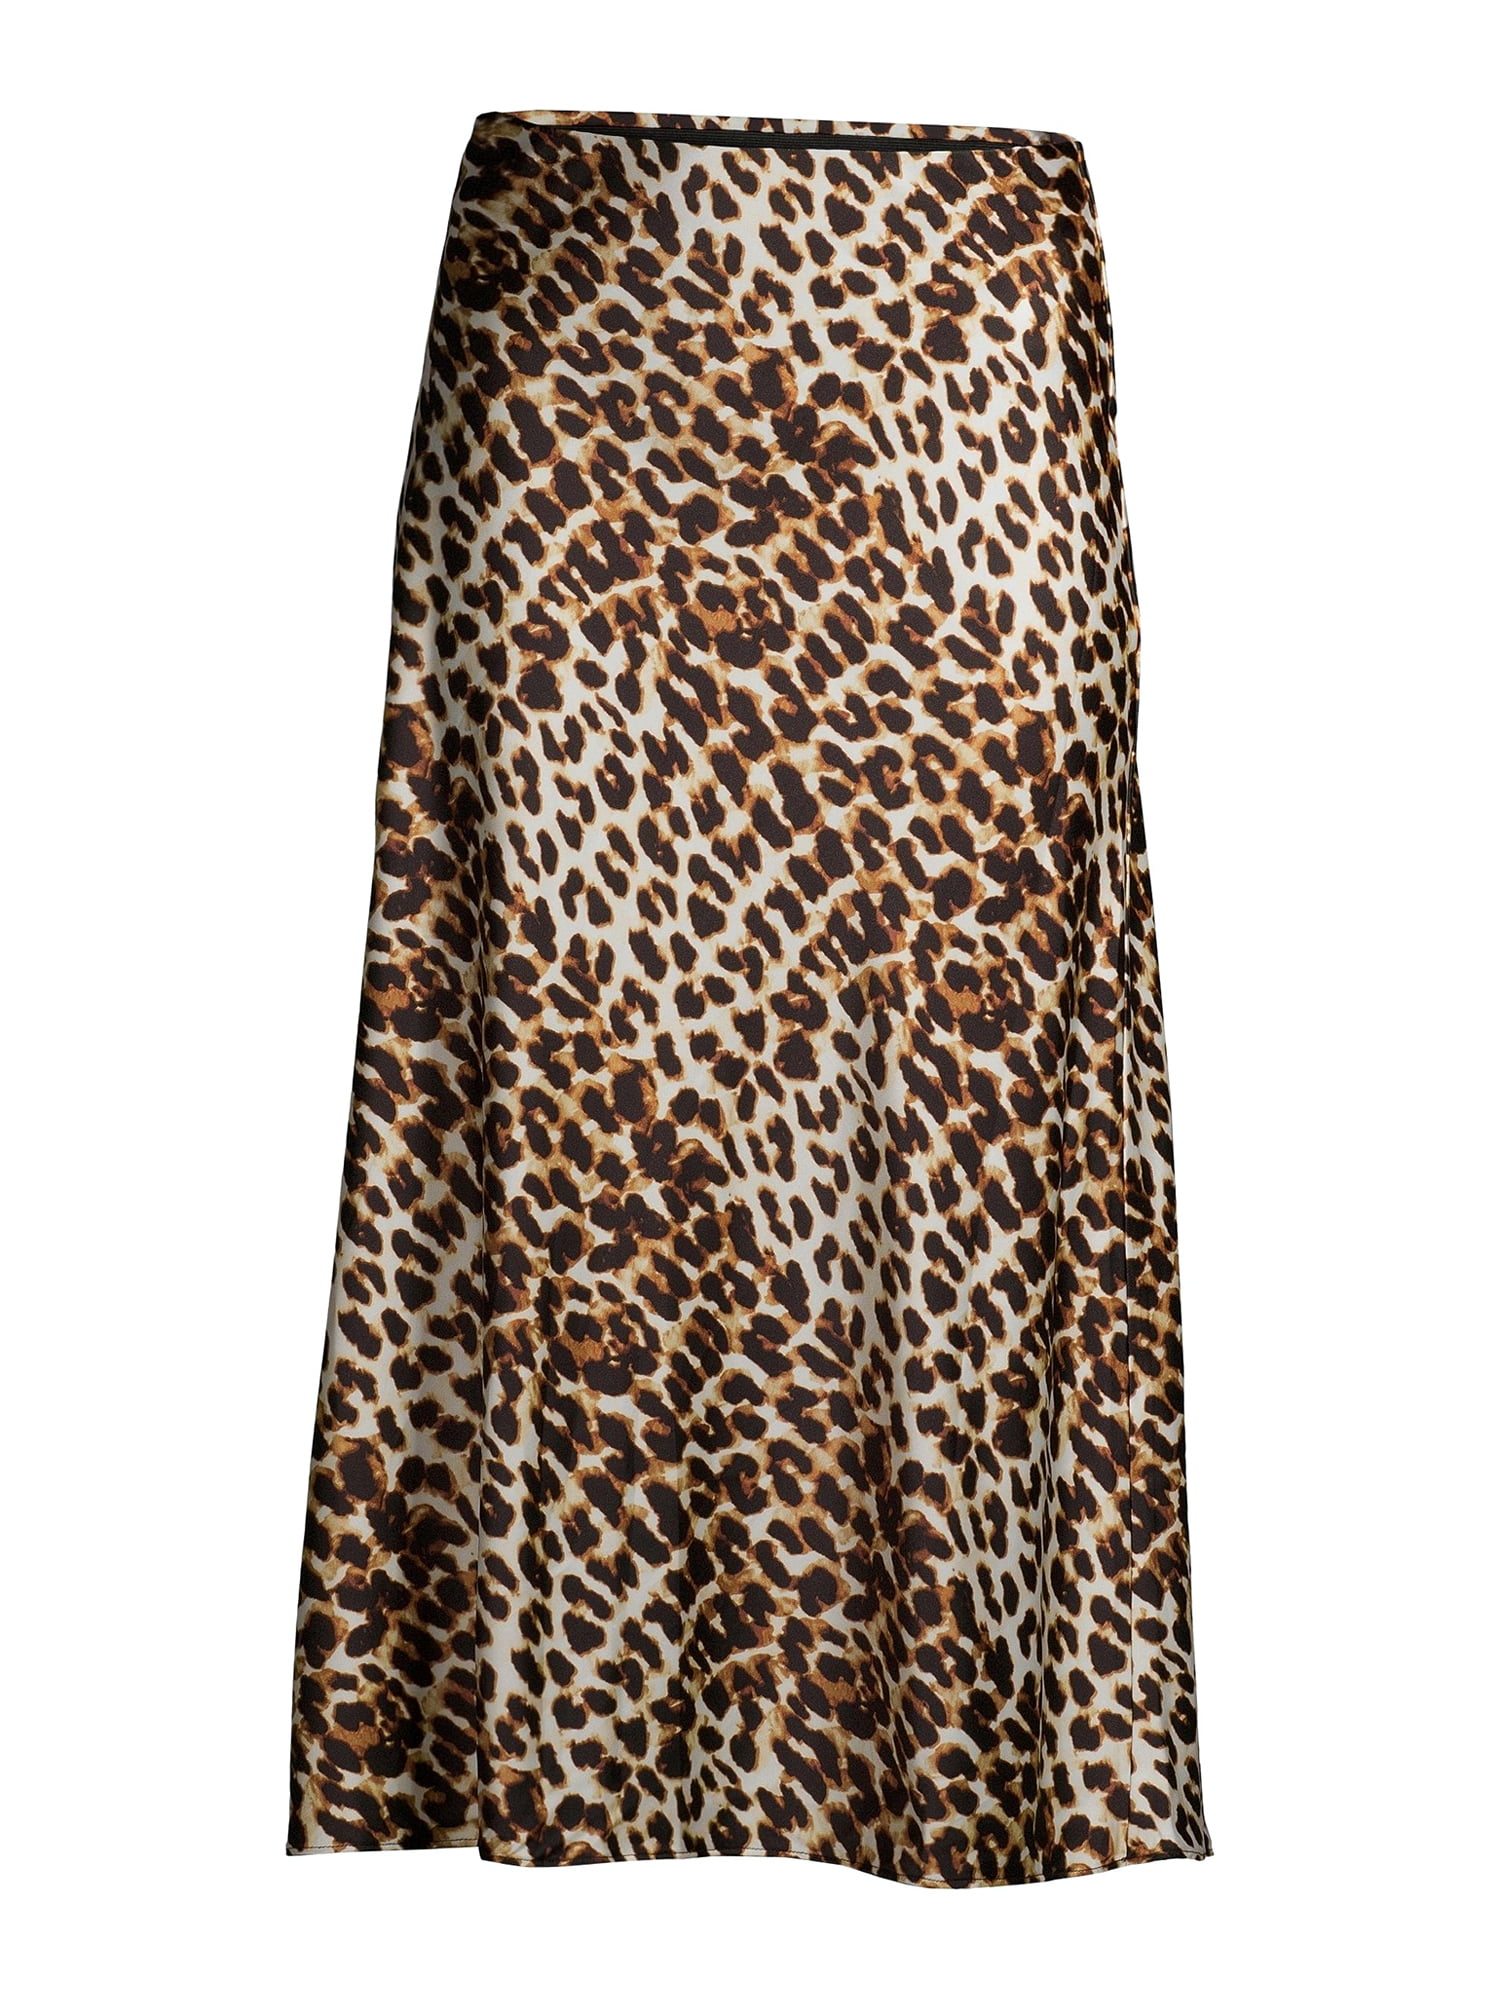 vintage leopard print slip skirt  slip skirt   lingerie  sleepwear  midi slip skirt